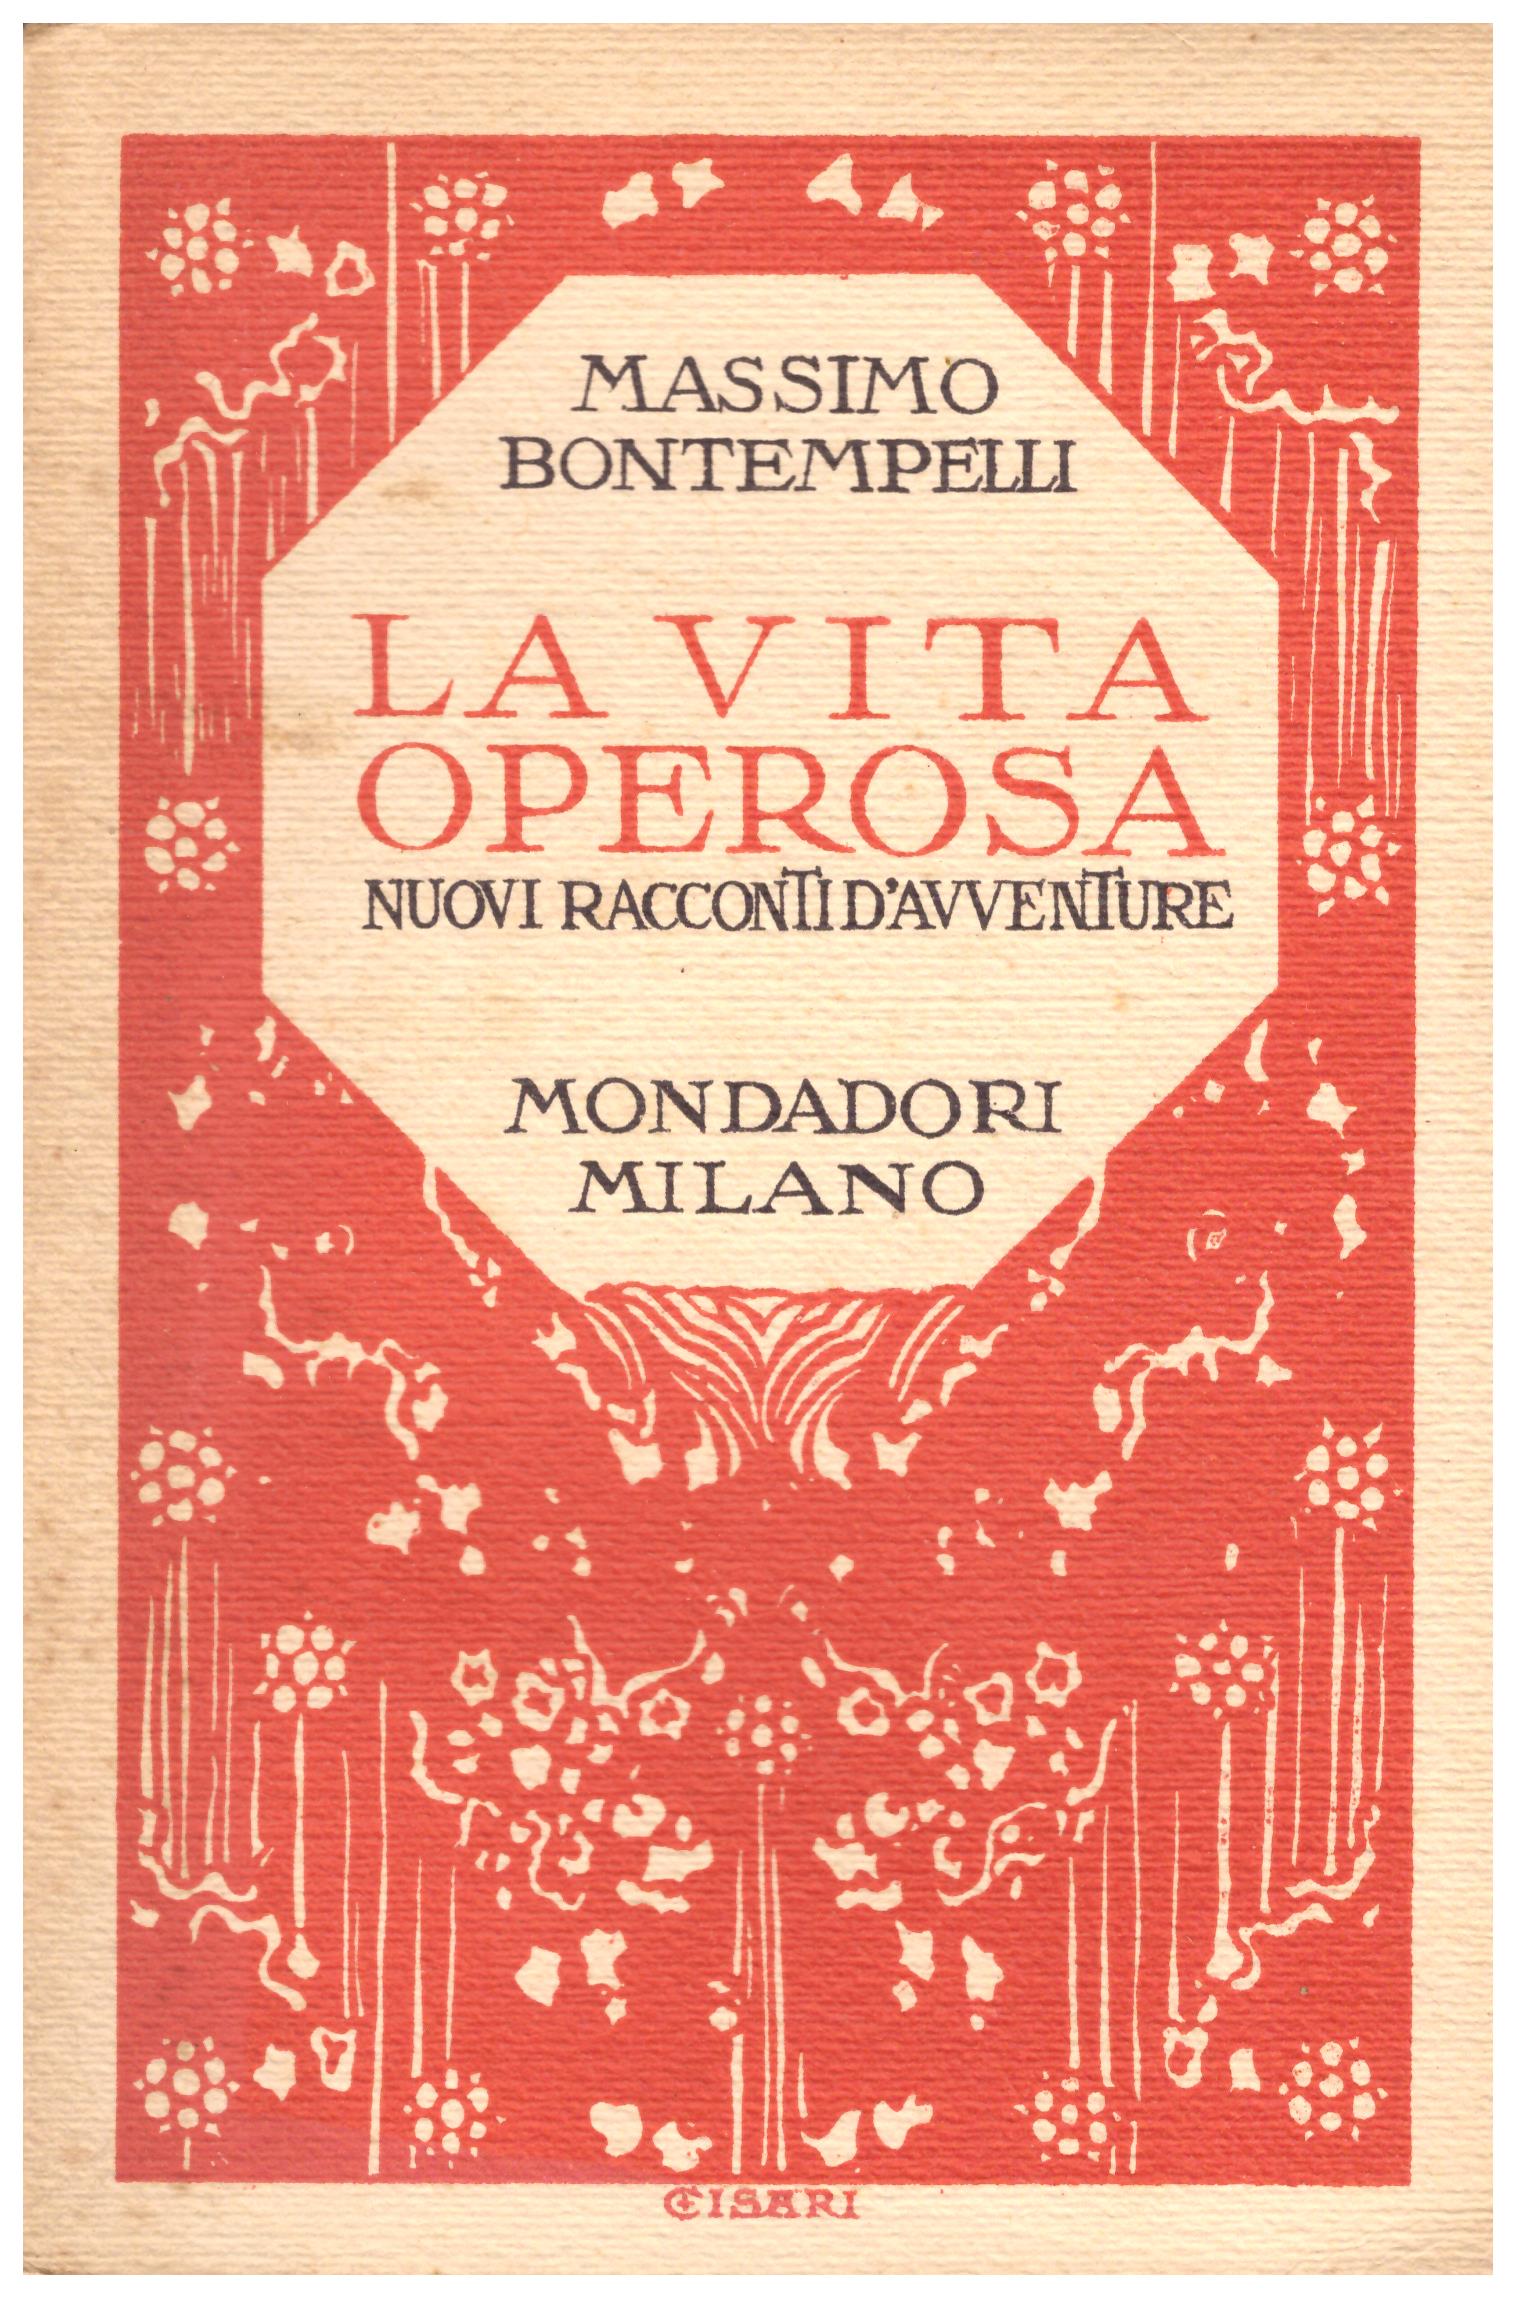 Titolo: La vita operosa  Autore: Massimo Bontempelli Editore: mondadori 1925